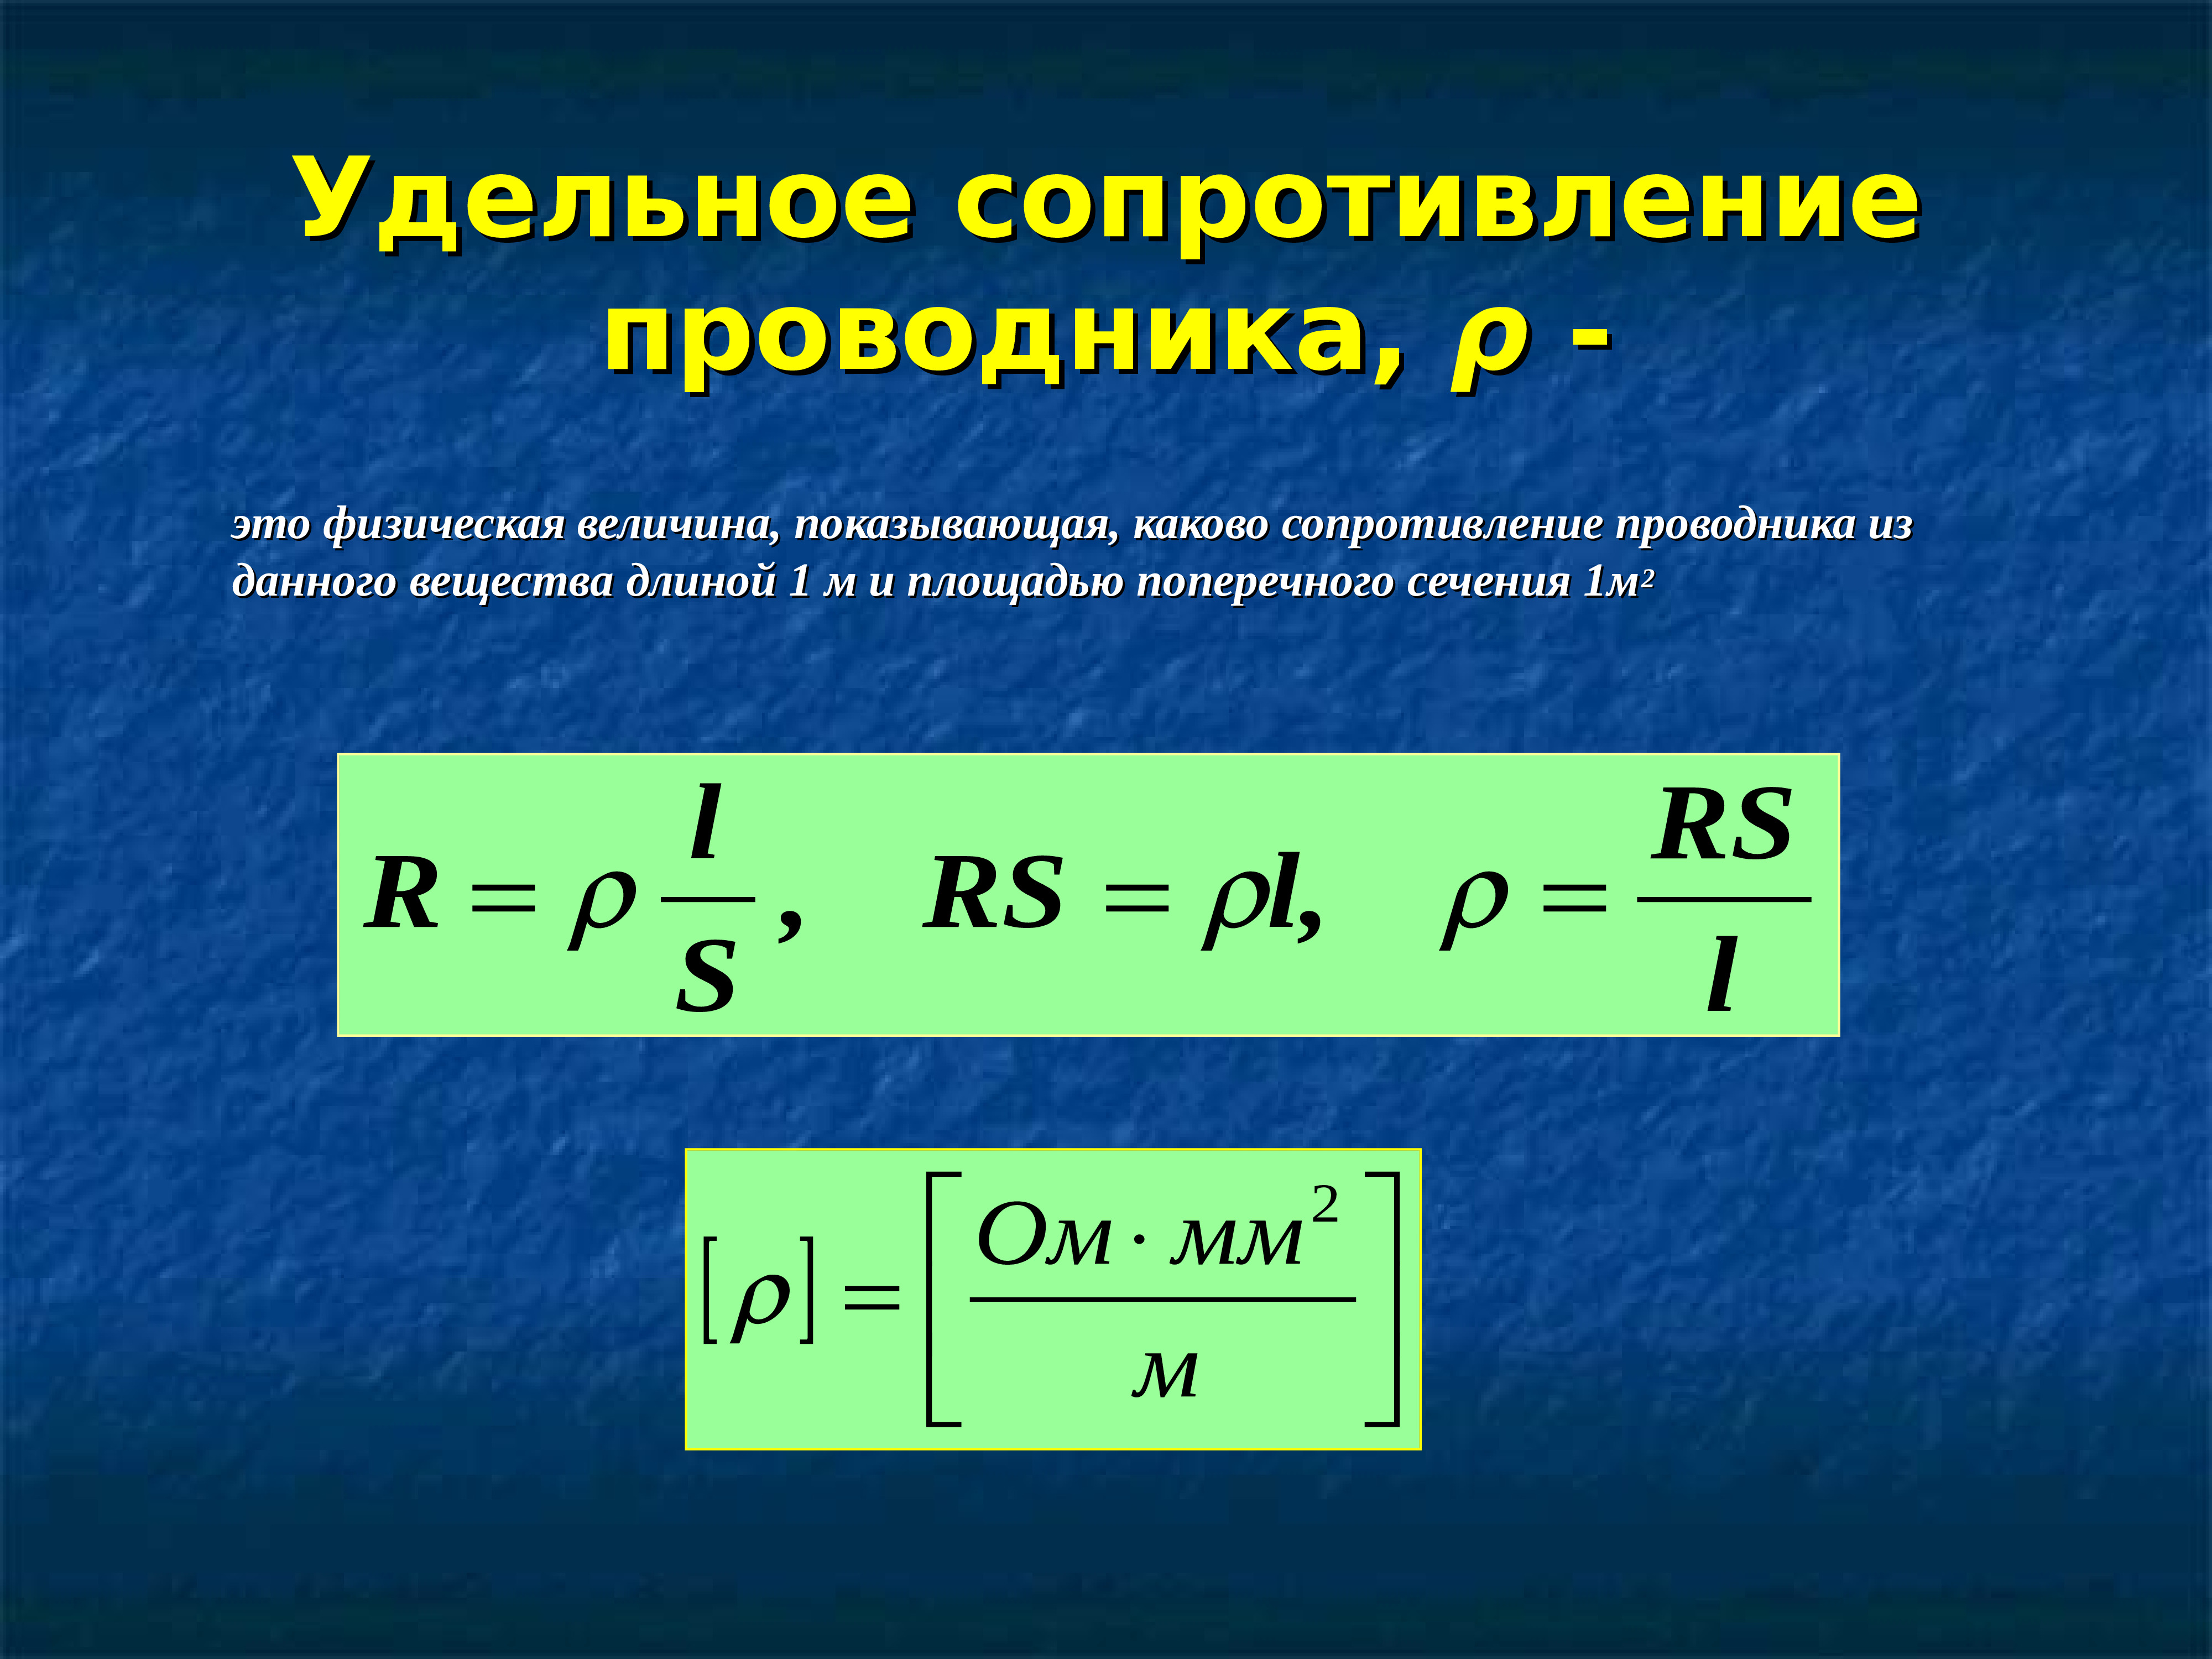 Расчёт сопротивления проводника - формулы и примеры вычислений